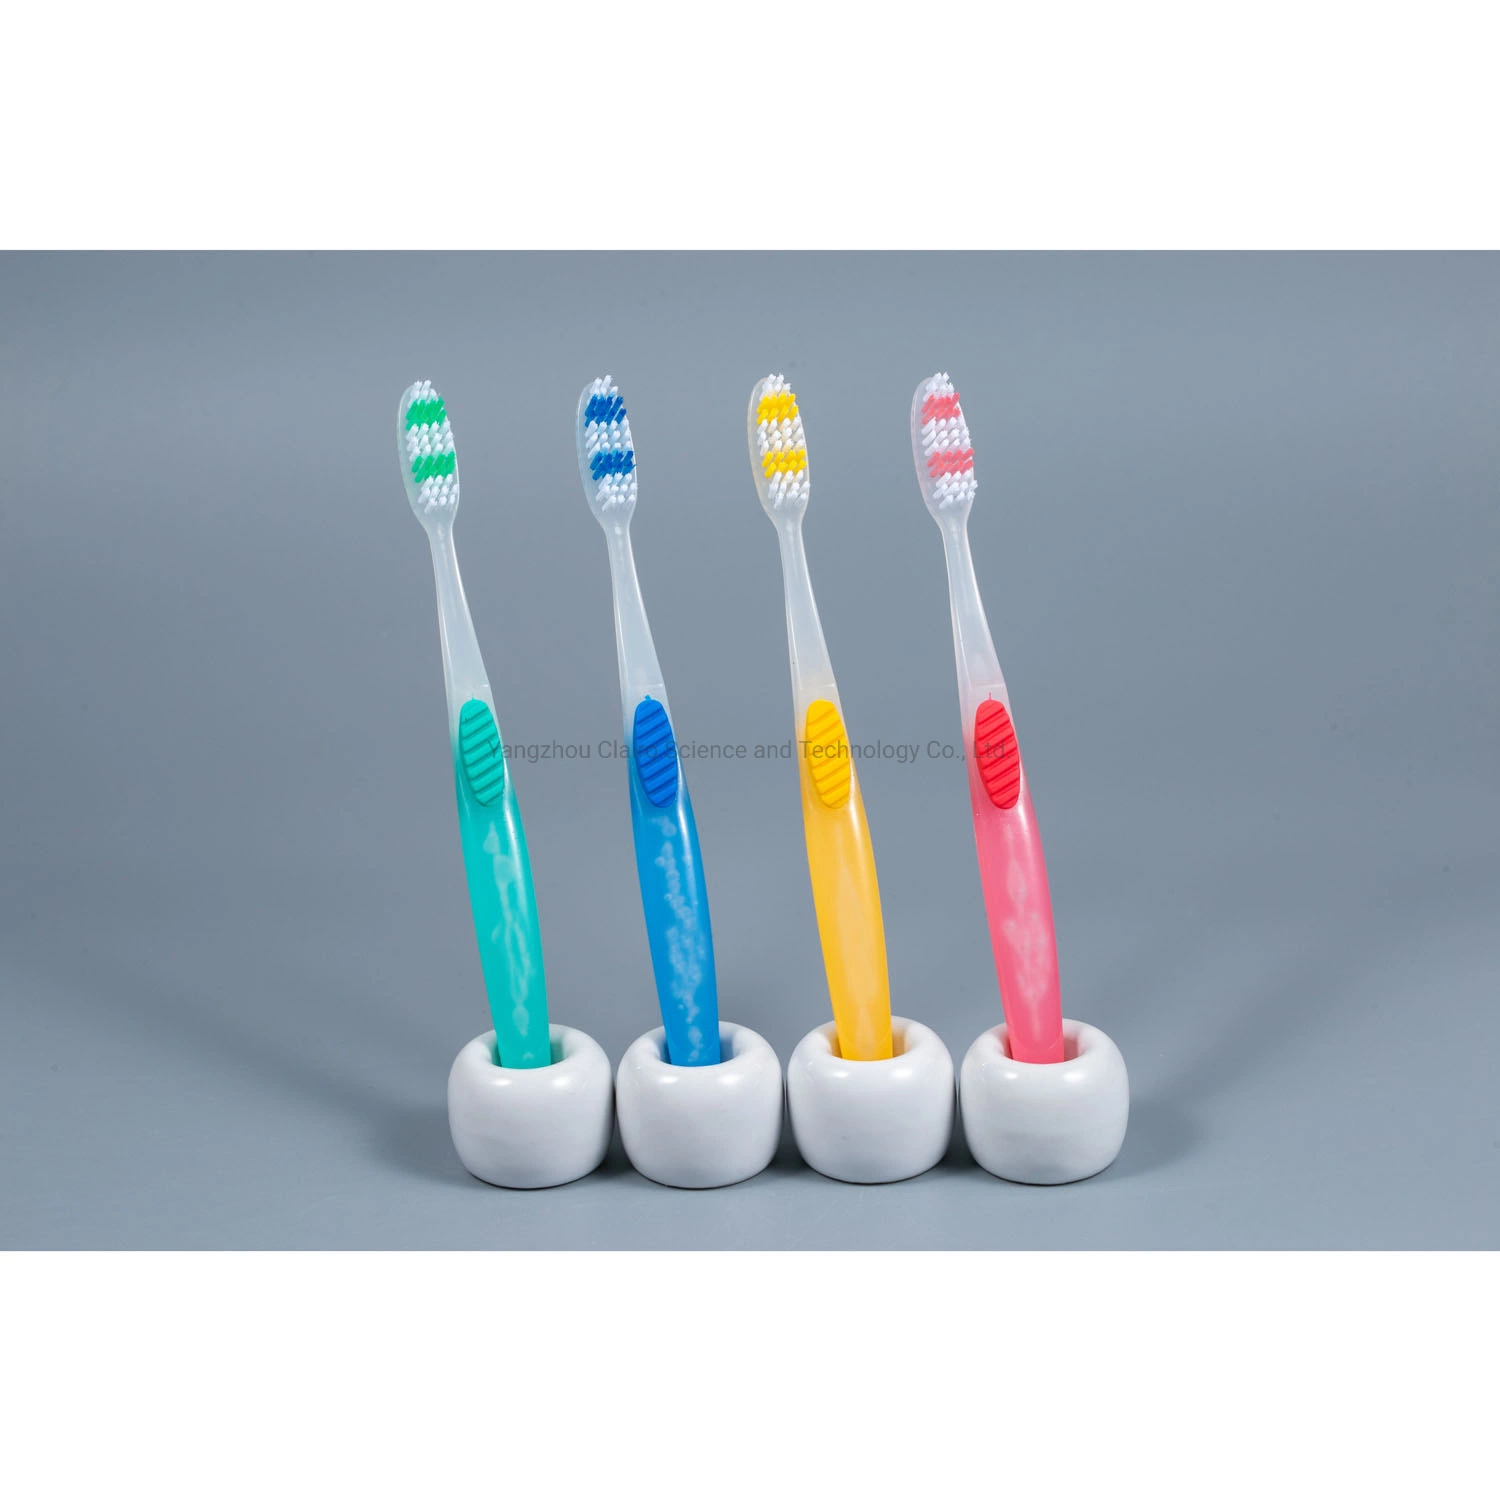 فرشاة أسنان بلاستيكية موافقة إدارة الغذاء والدواء عند التسليم